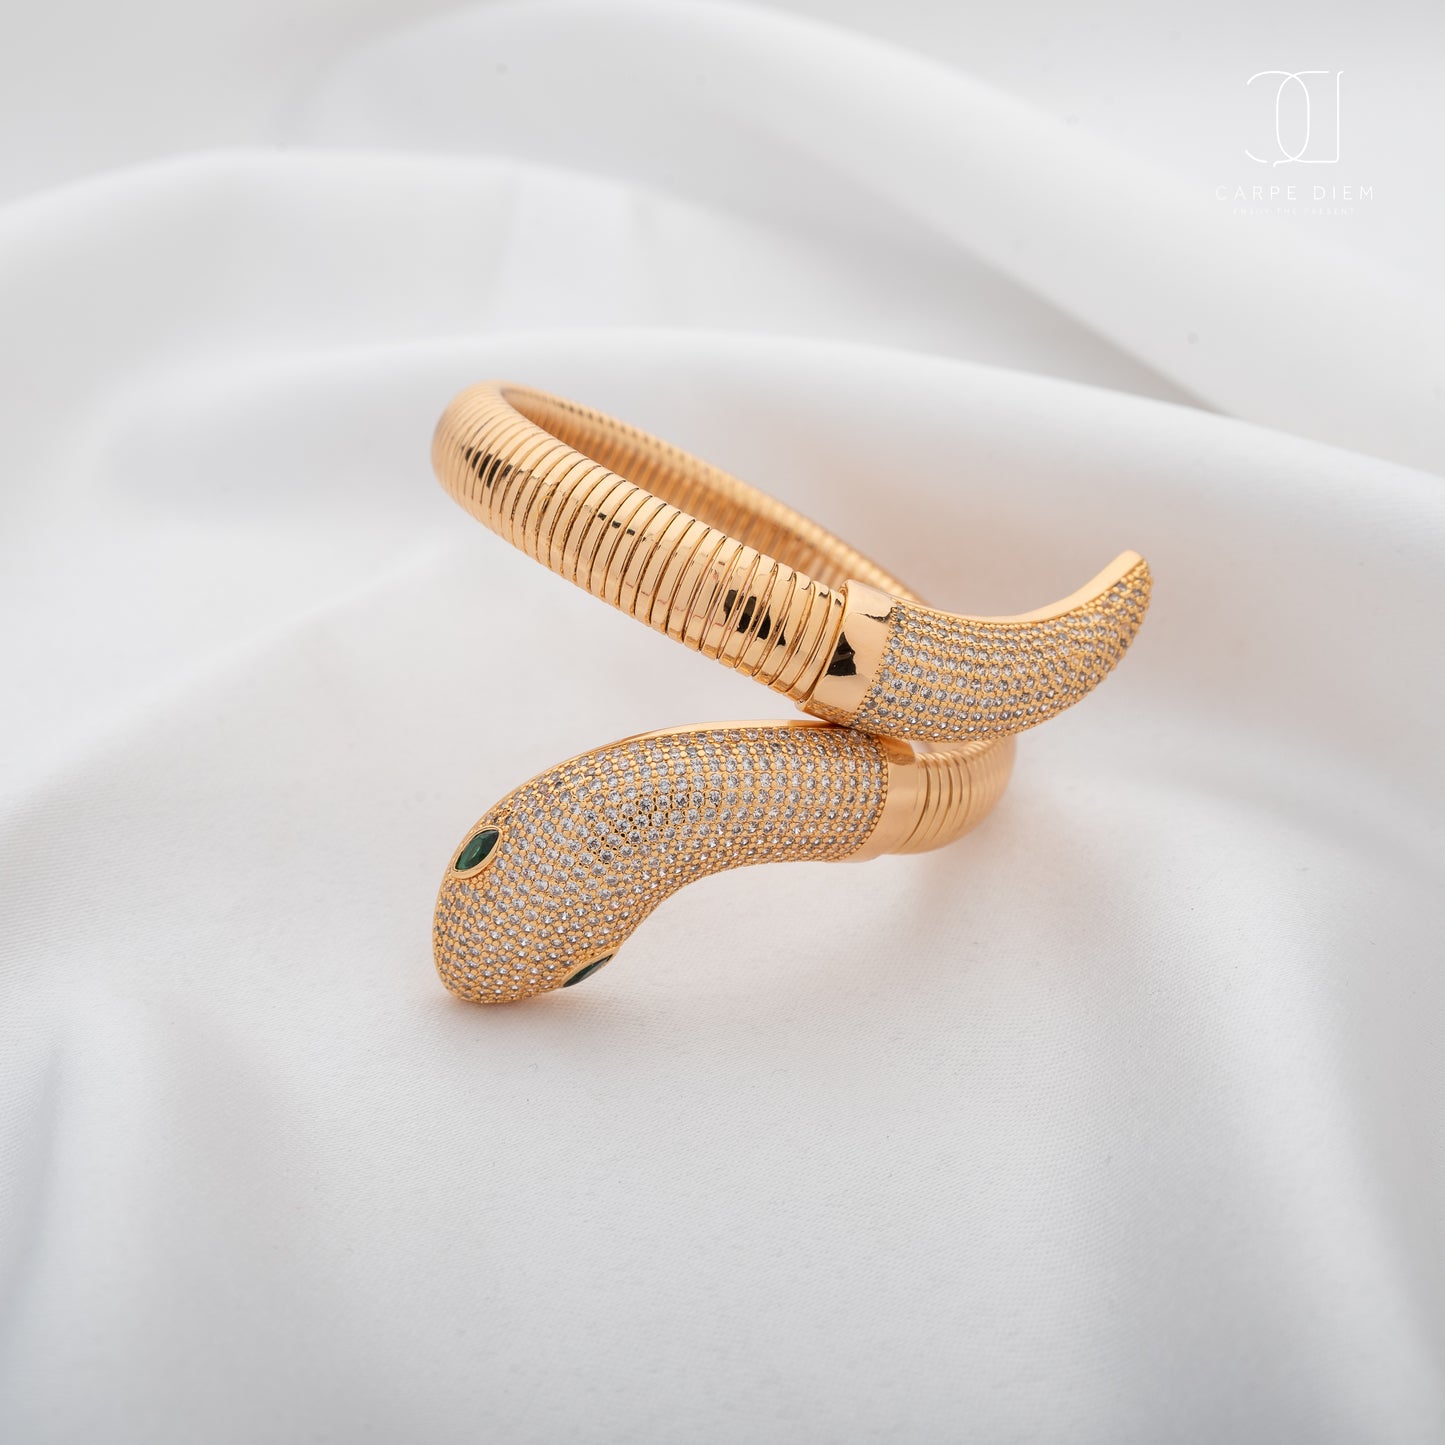 CDBR174- Gold plated Bracelet